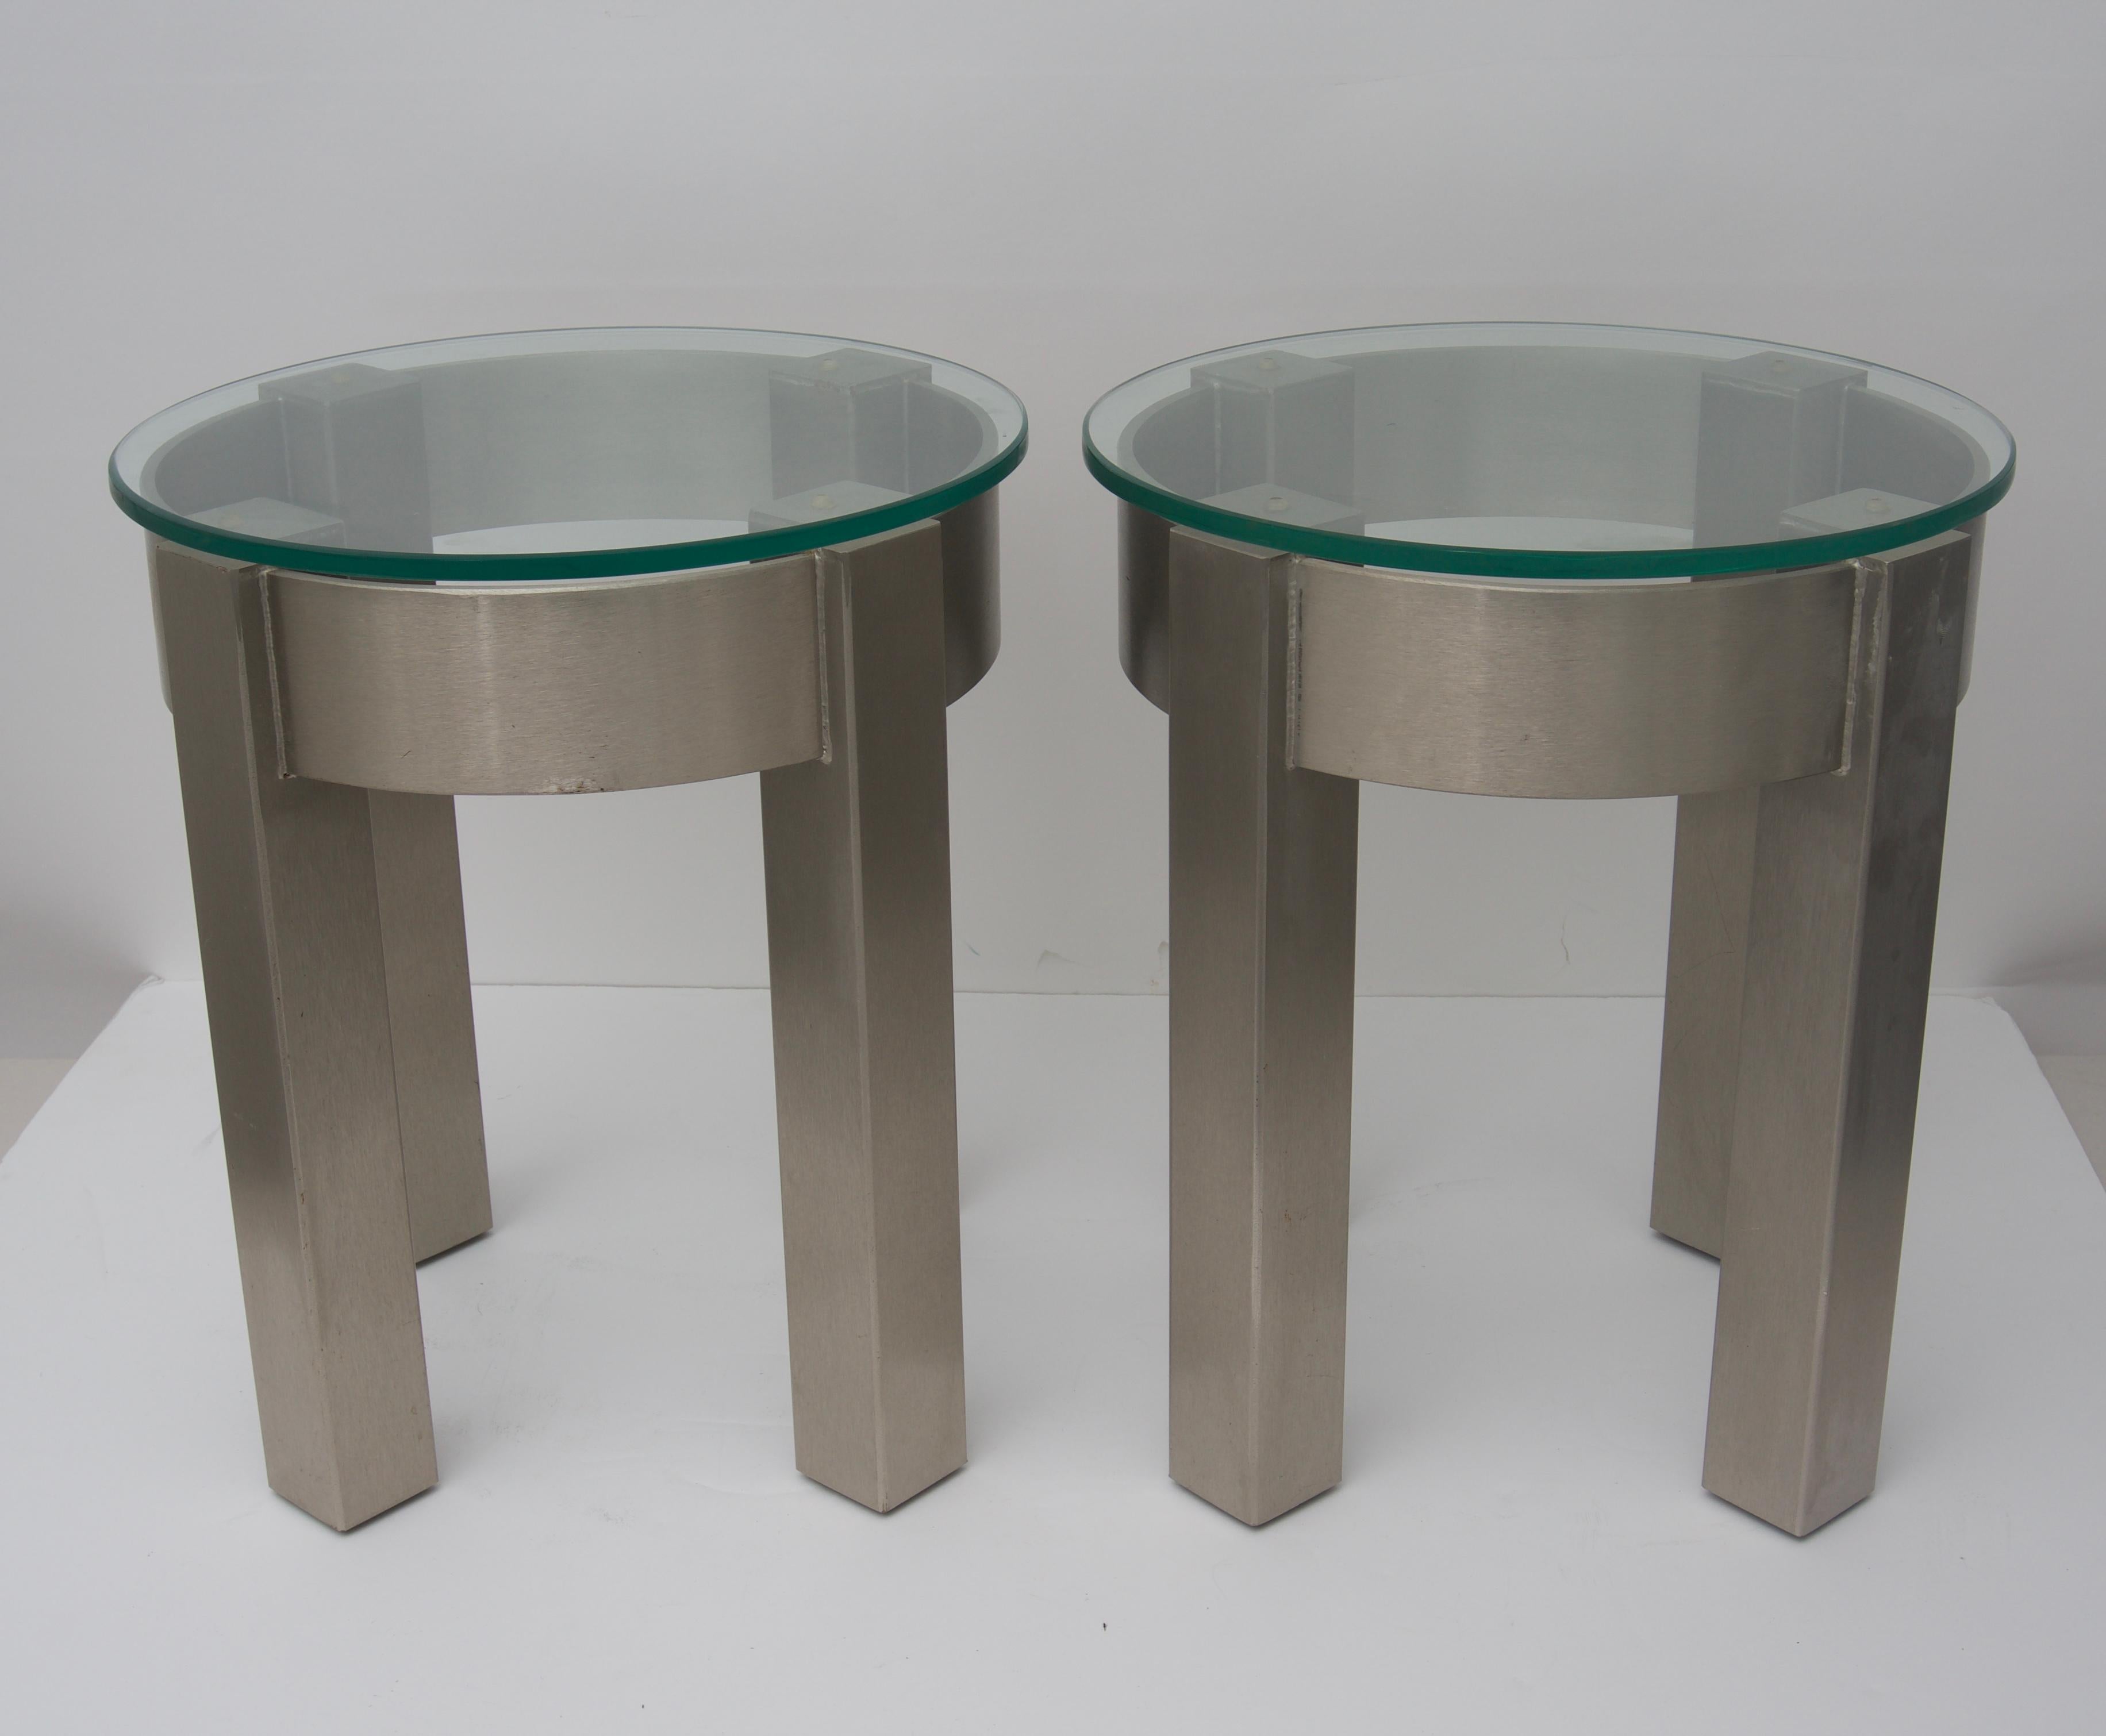 Cet ensemble élégant de tables d'appoint est fabriqué en acier inoxydable avec des plateaux en verre amovibles.